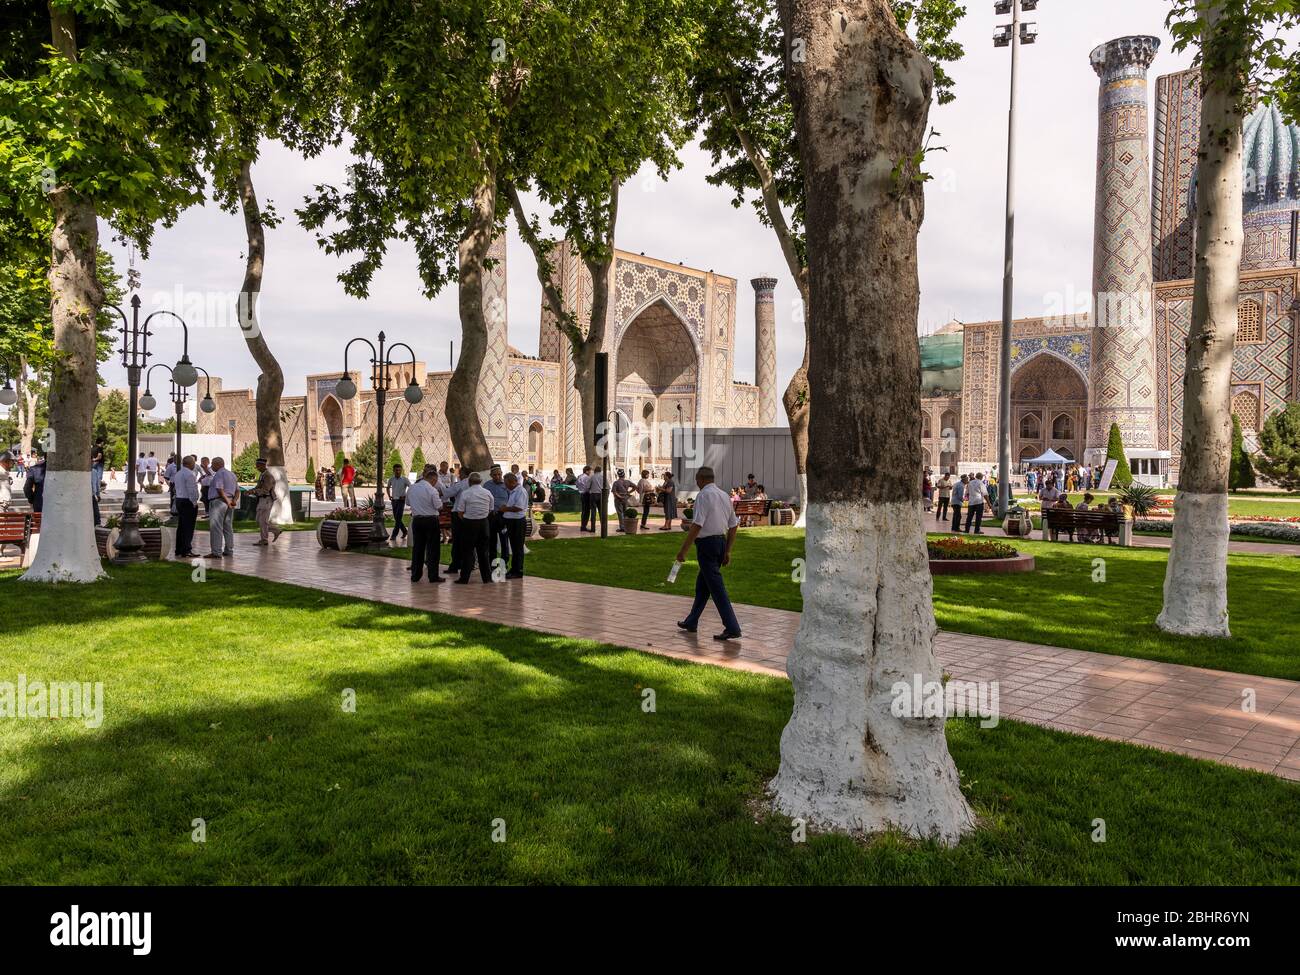 Samarqand, Uzbekistan - 9 giugno 2019: Piazza con persone, alberi e persone nella madrasa nel centro di Samarqand in Uzbekistan. Foto Stock